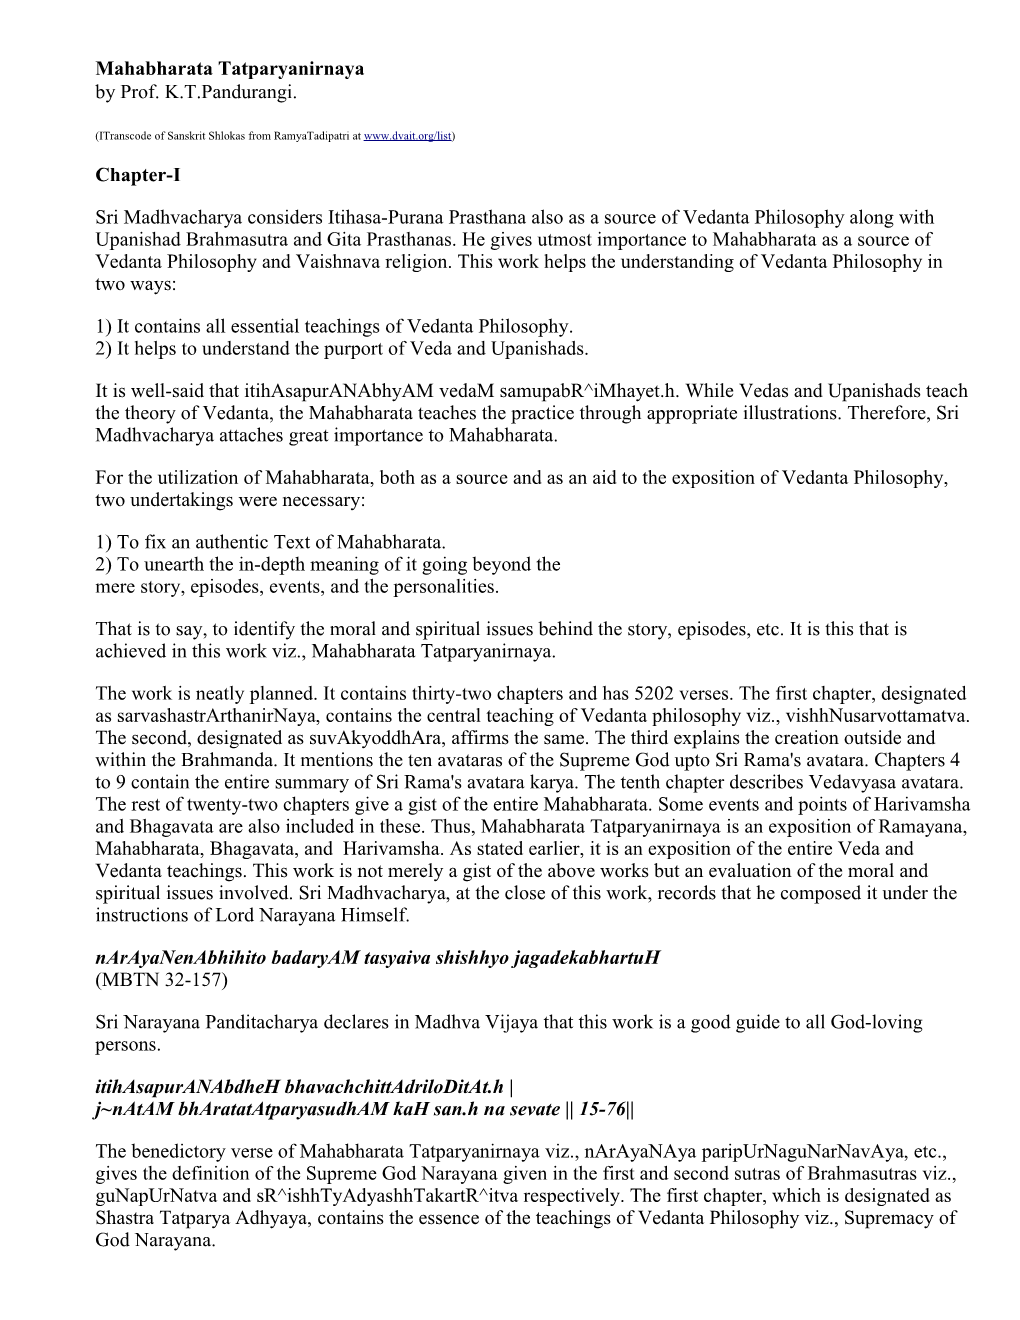 Mahabharata Tatparyanirnaya by Prof. K.T.Pandurangi. Chapter-I